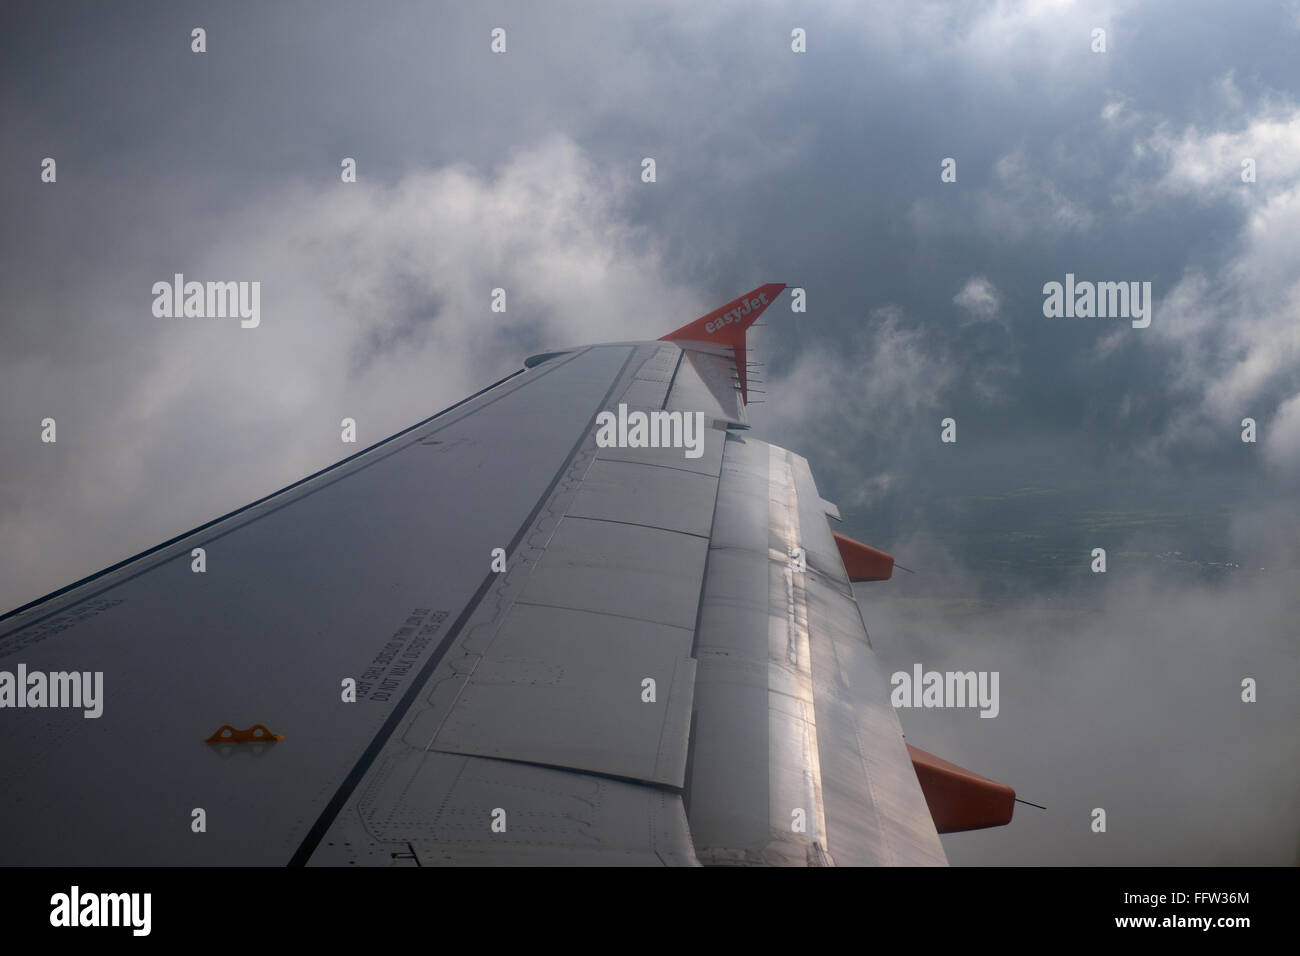 Easyjet punta ala in volo attraverso le nuvole Foto Stock